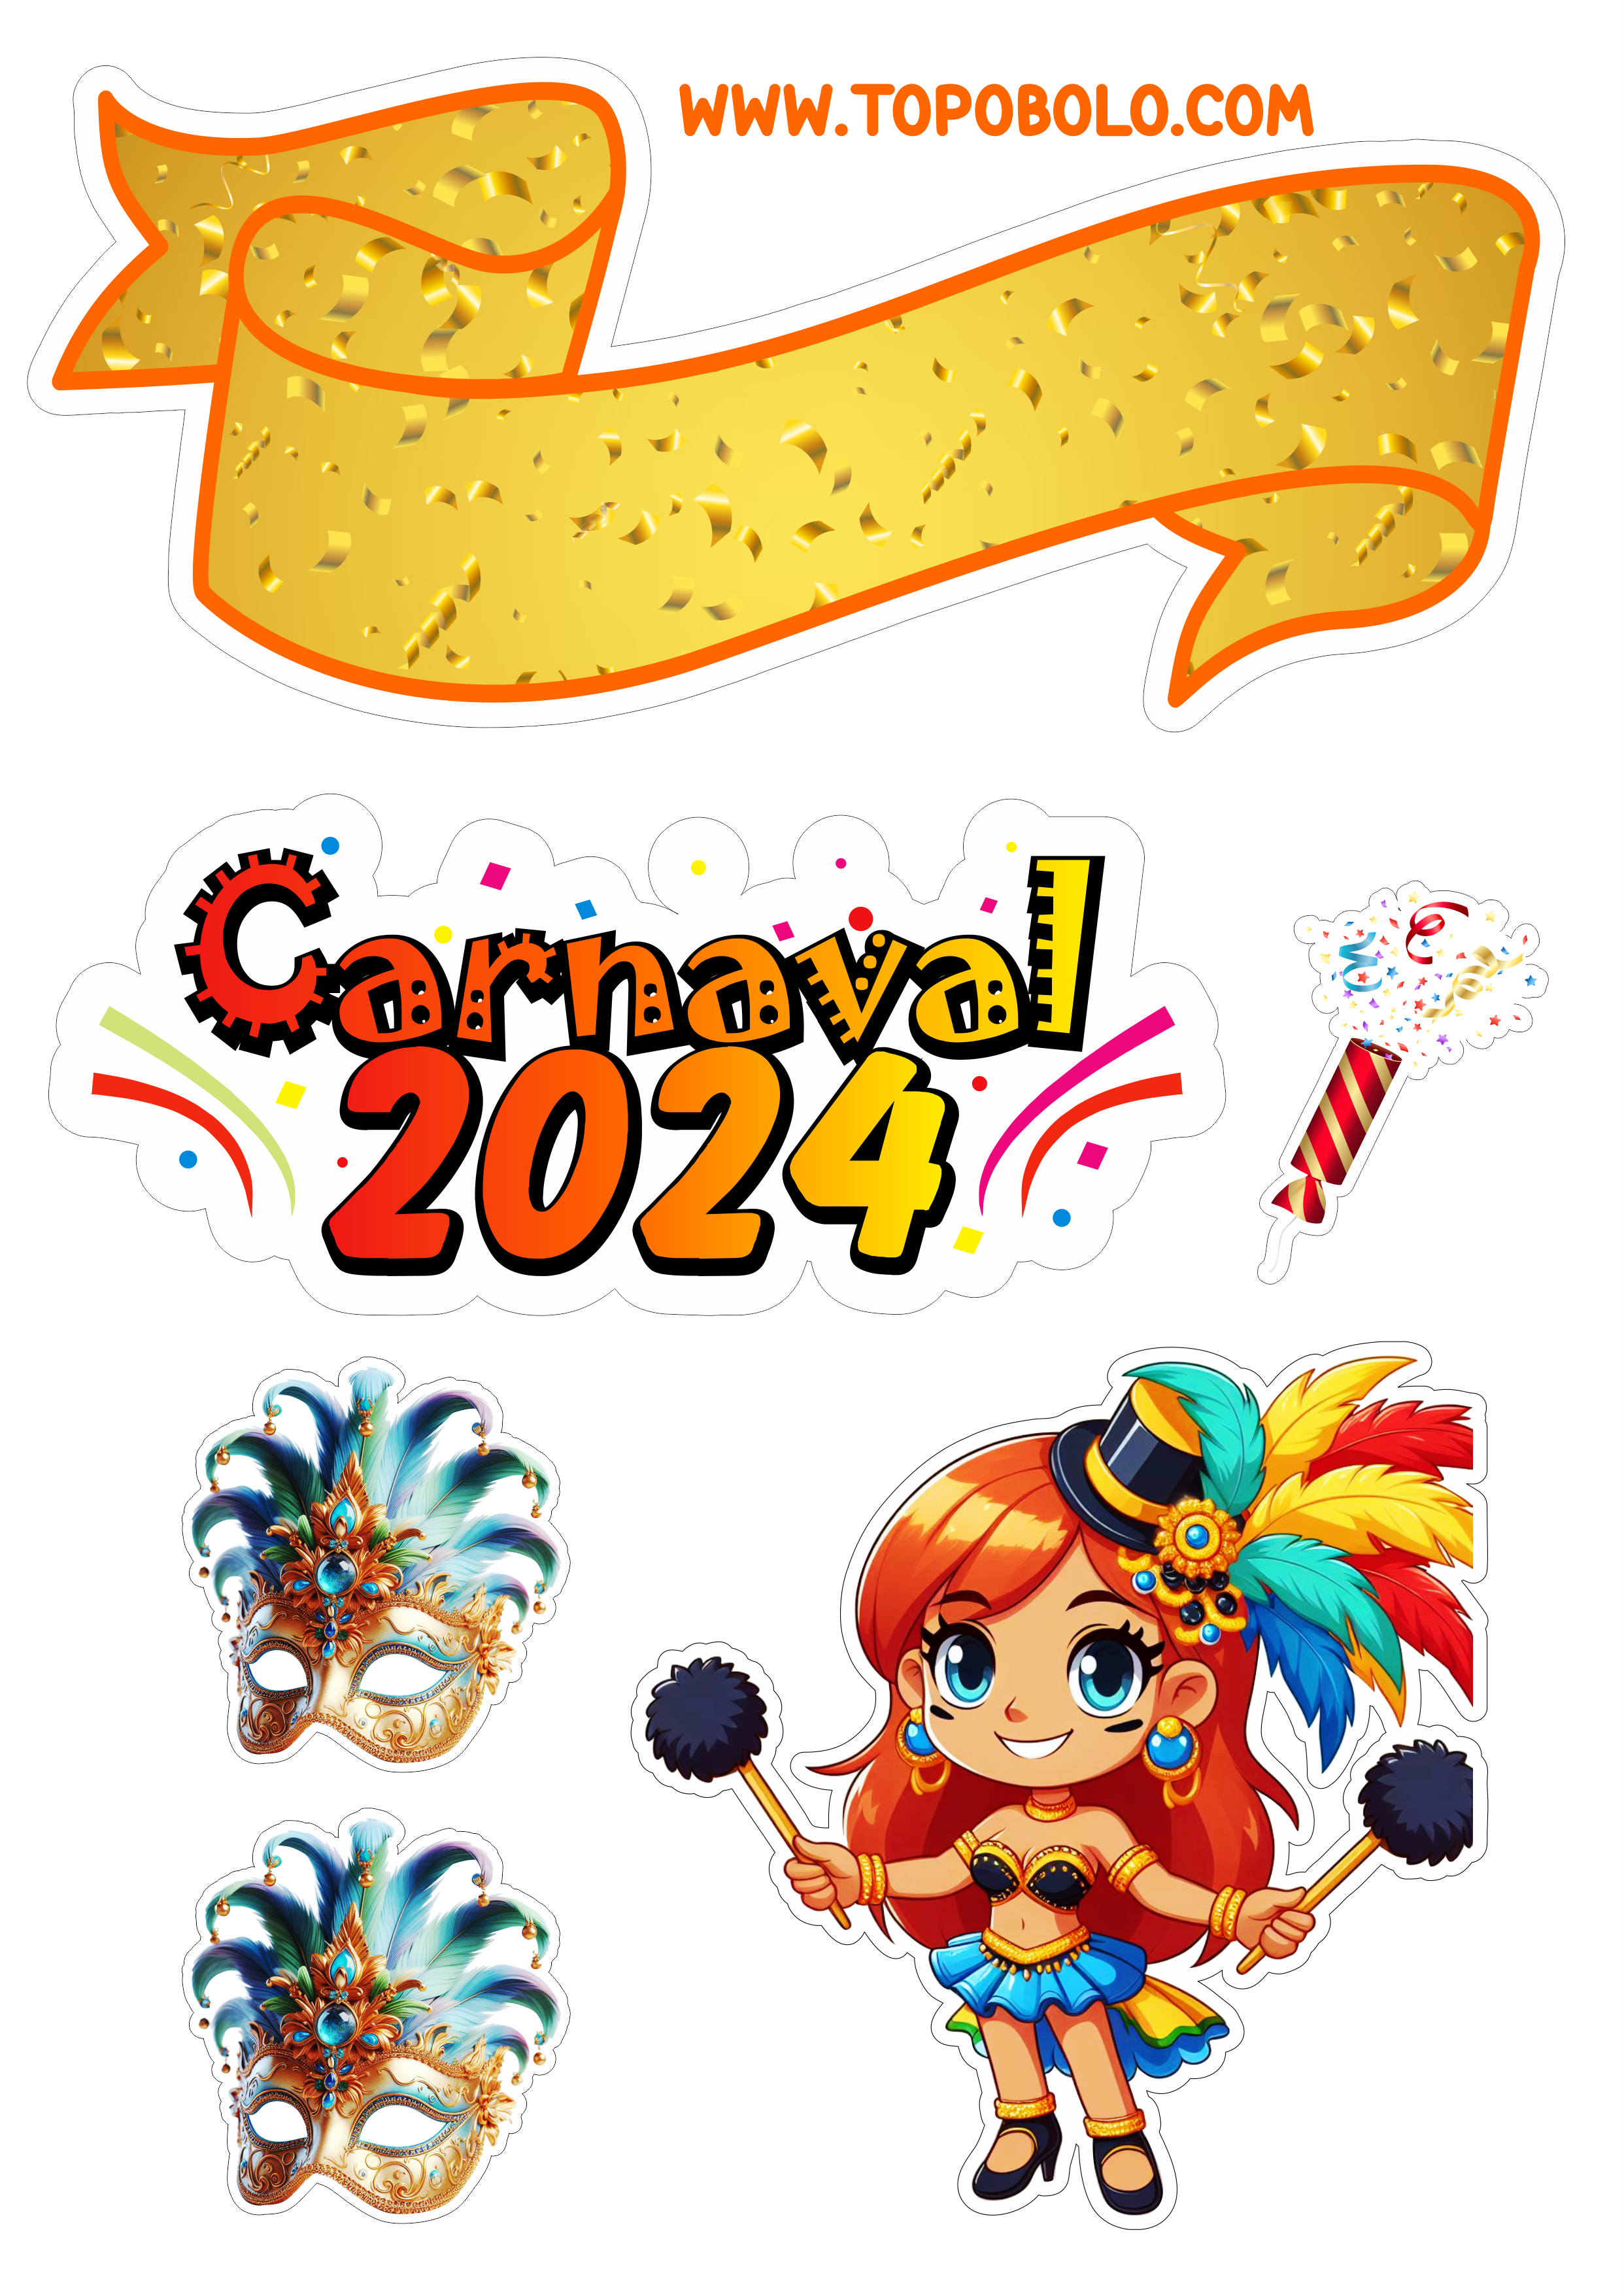 Topo de bolo carnaval 2024 decoração de aniversário baile de máscaras confete artes gráficas png